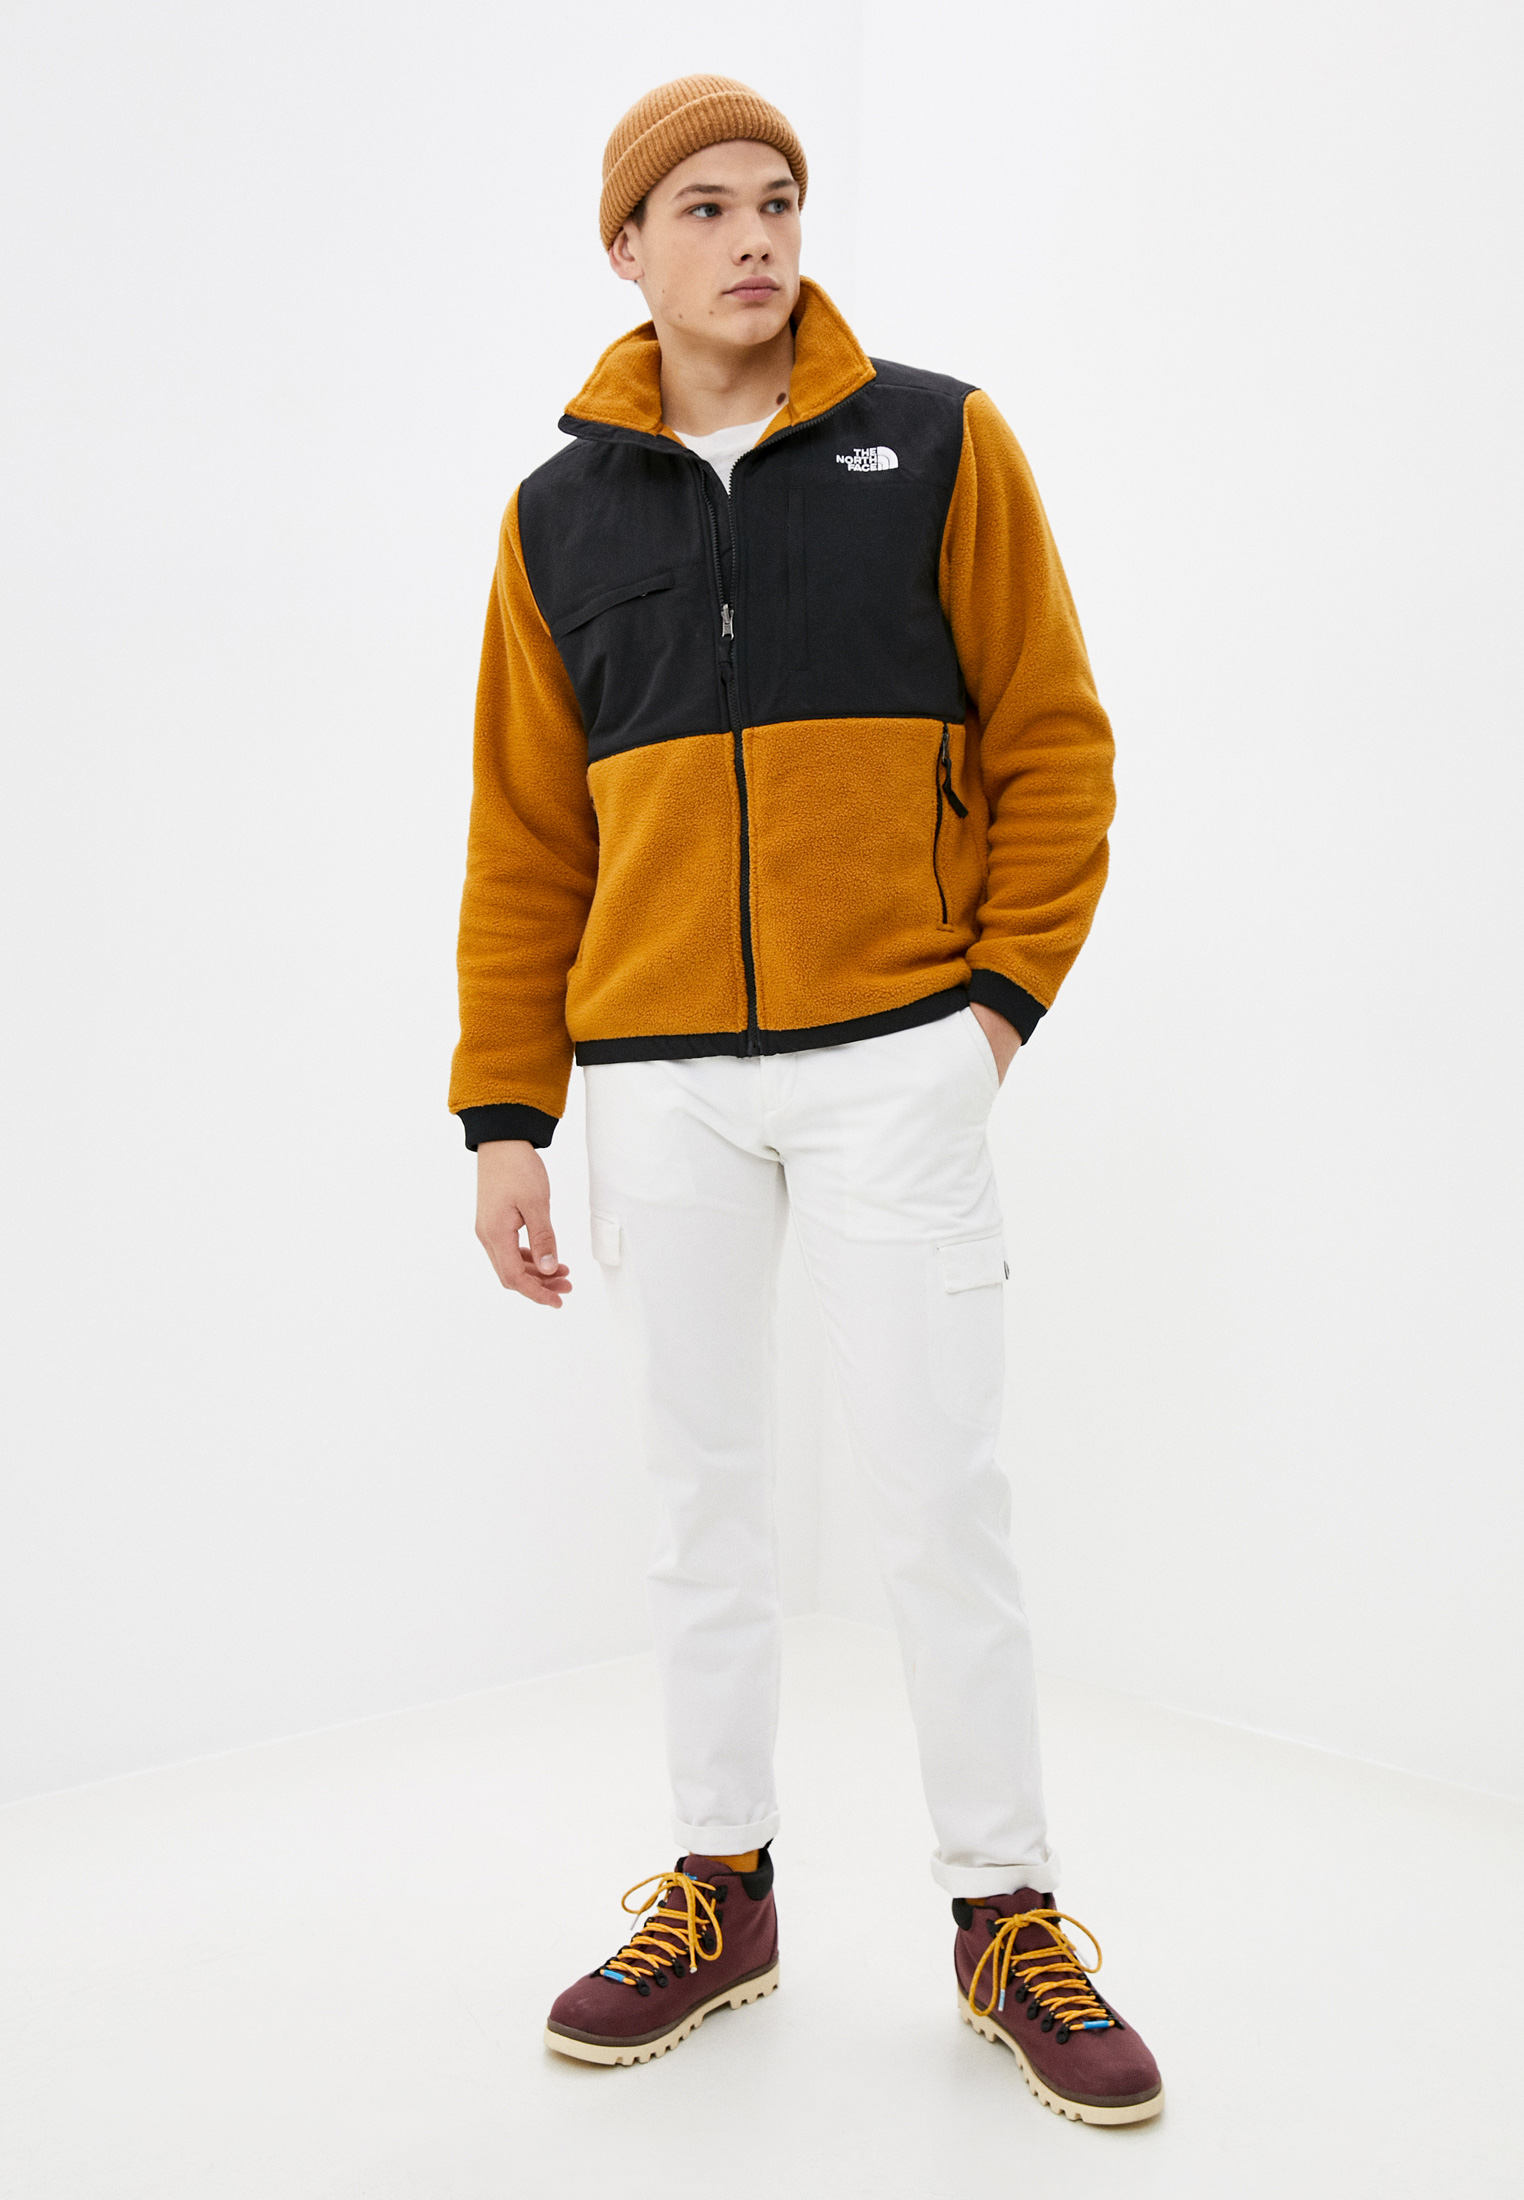 Куртка The North Face DENALI 2 JACKET, цвет: оранжевый, TH016EMKGEC9 —  купить в интернет-магазине Lamoda